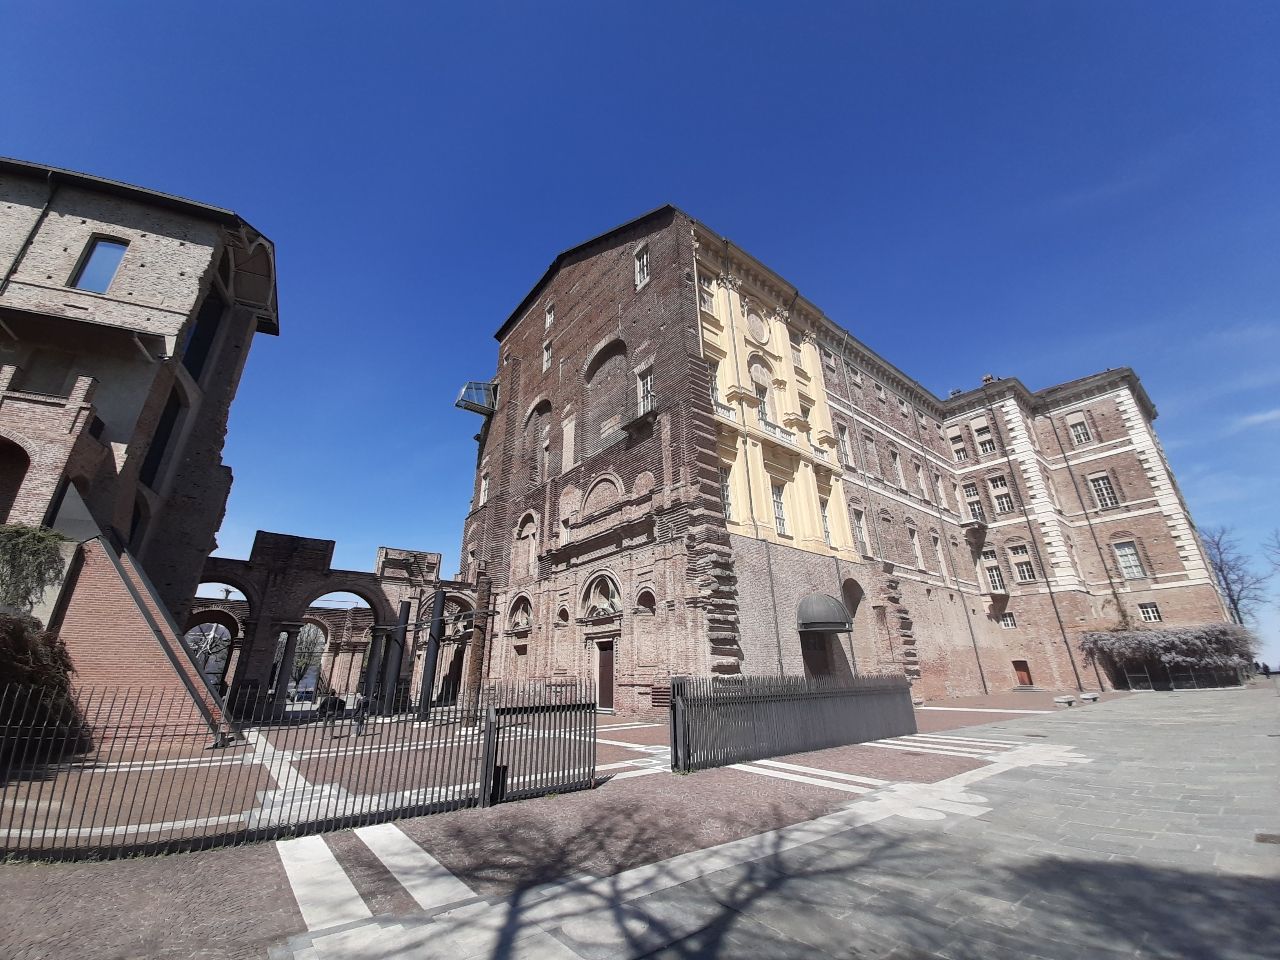 Castello di Rivoli - Museo d'Arte Contemporanea - Italy